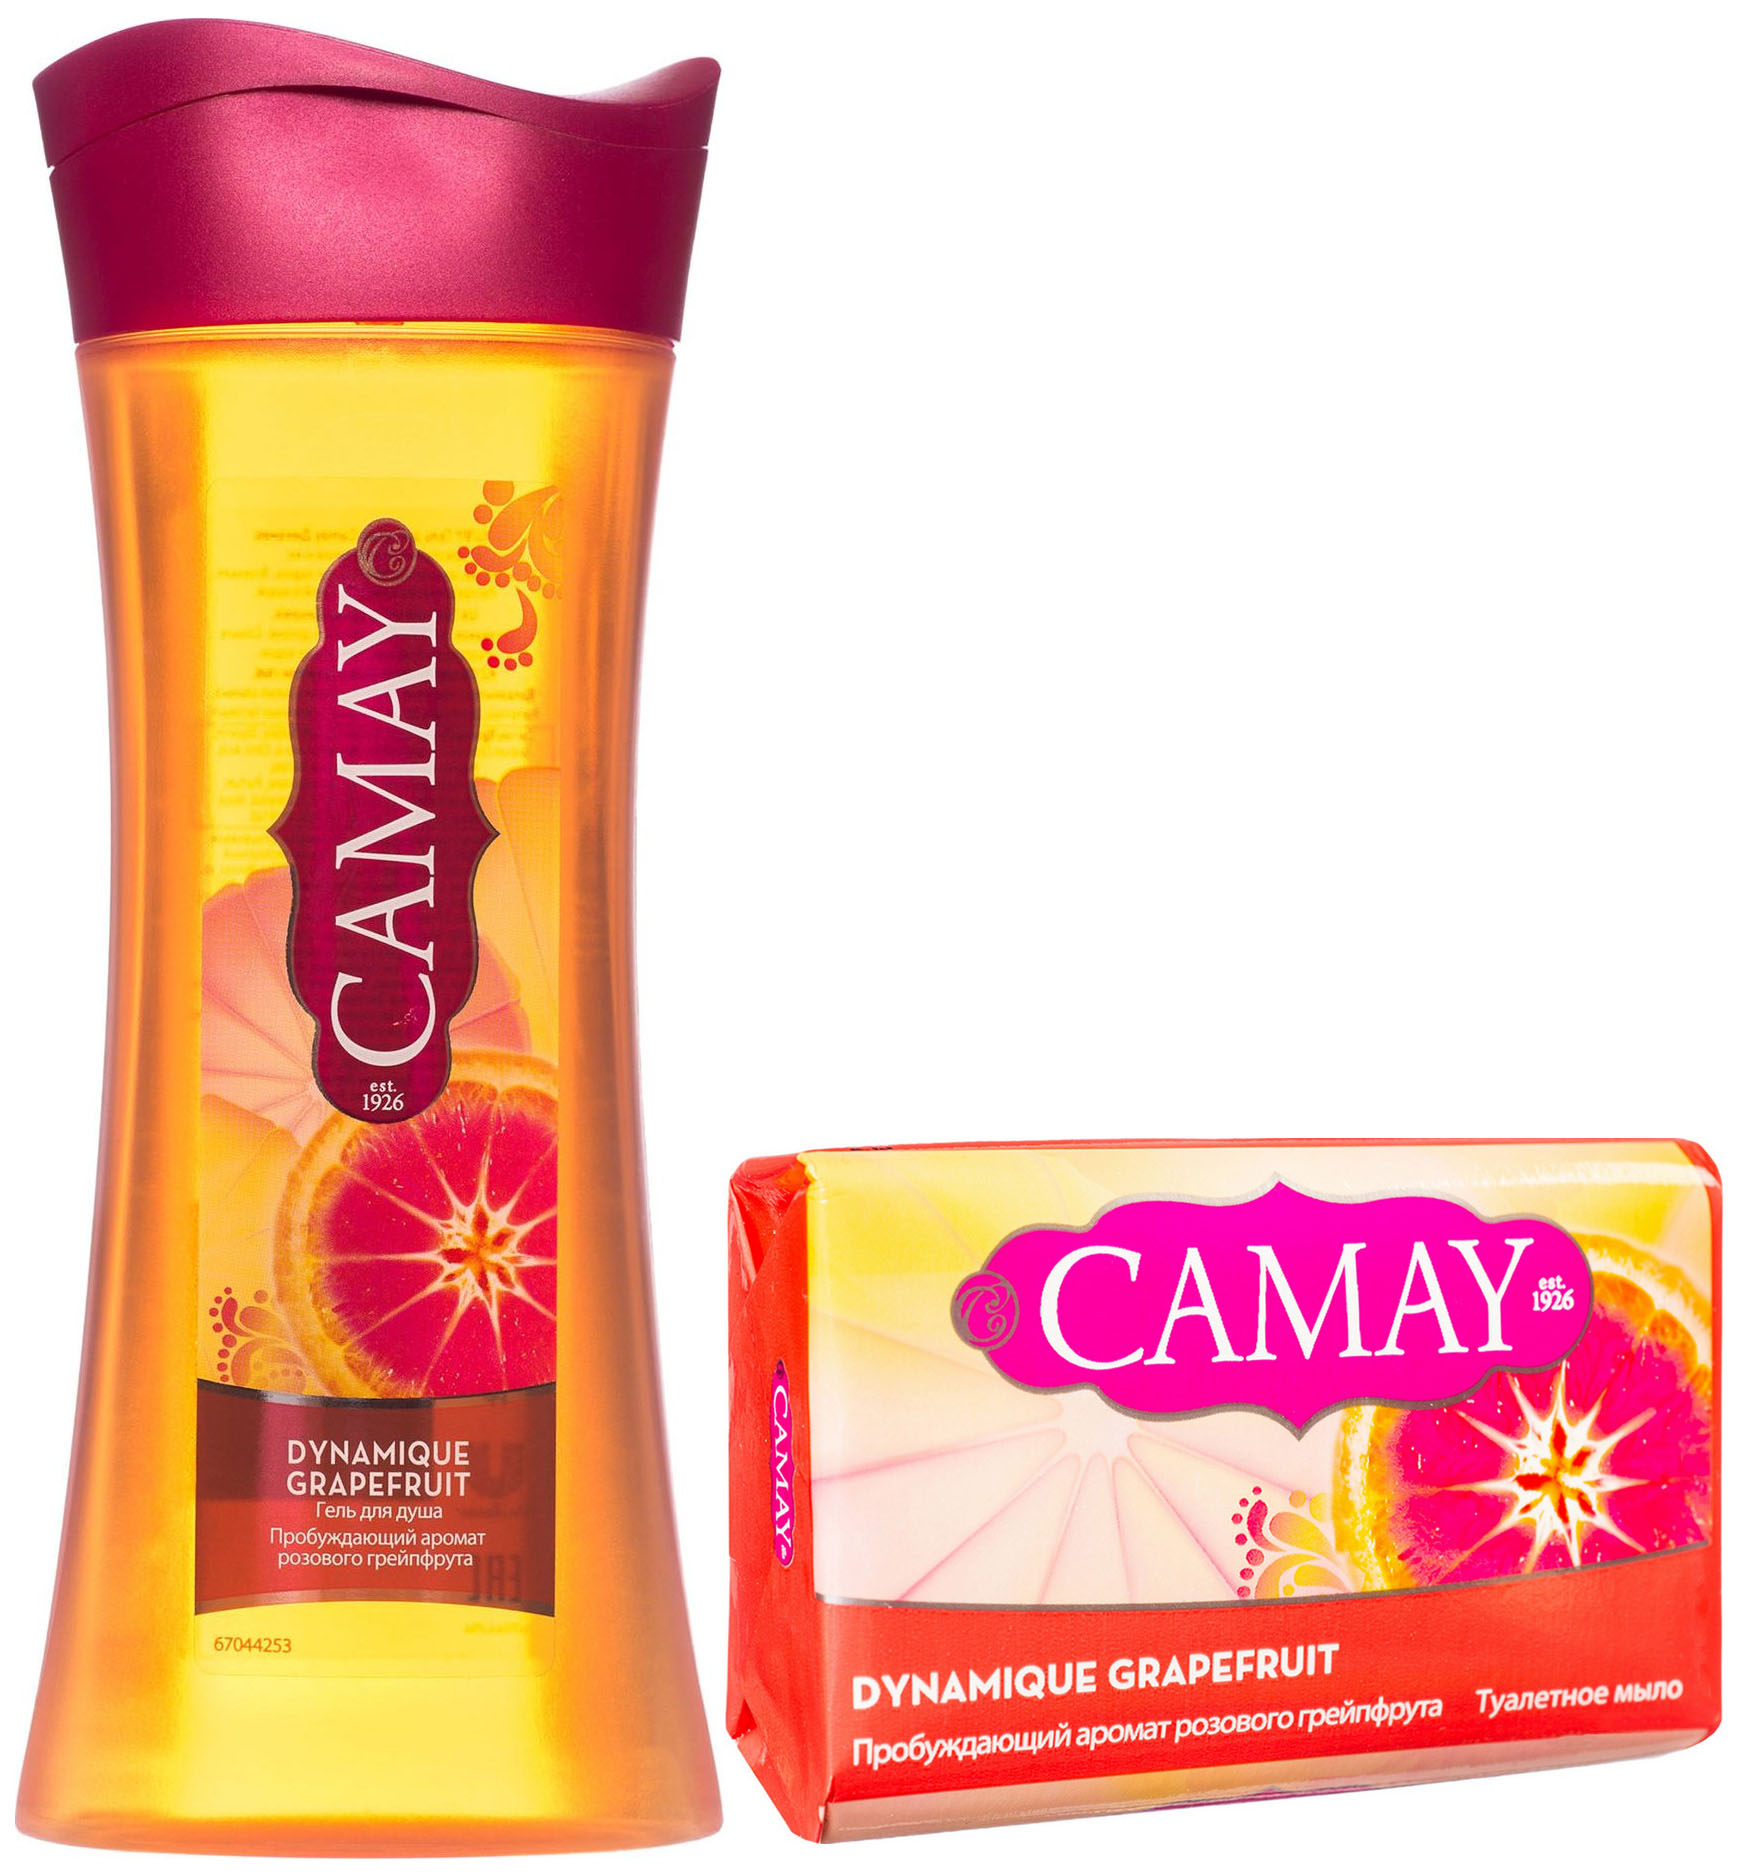 Гель для душа Camay Dynamique Grapefruit 250 мл + Мыло Camay Dynamique Grapefruit 85 г мыло camay романтик 85 г 2 шт в наборе